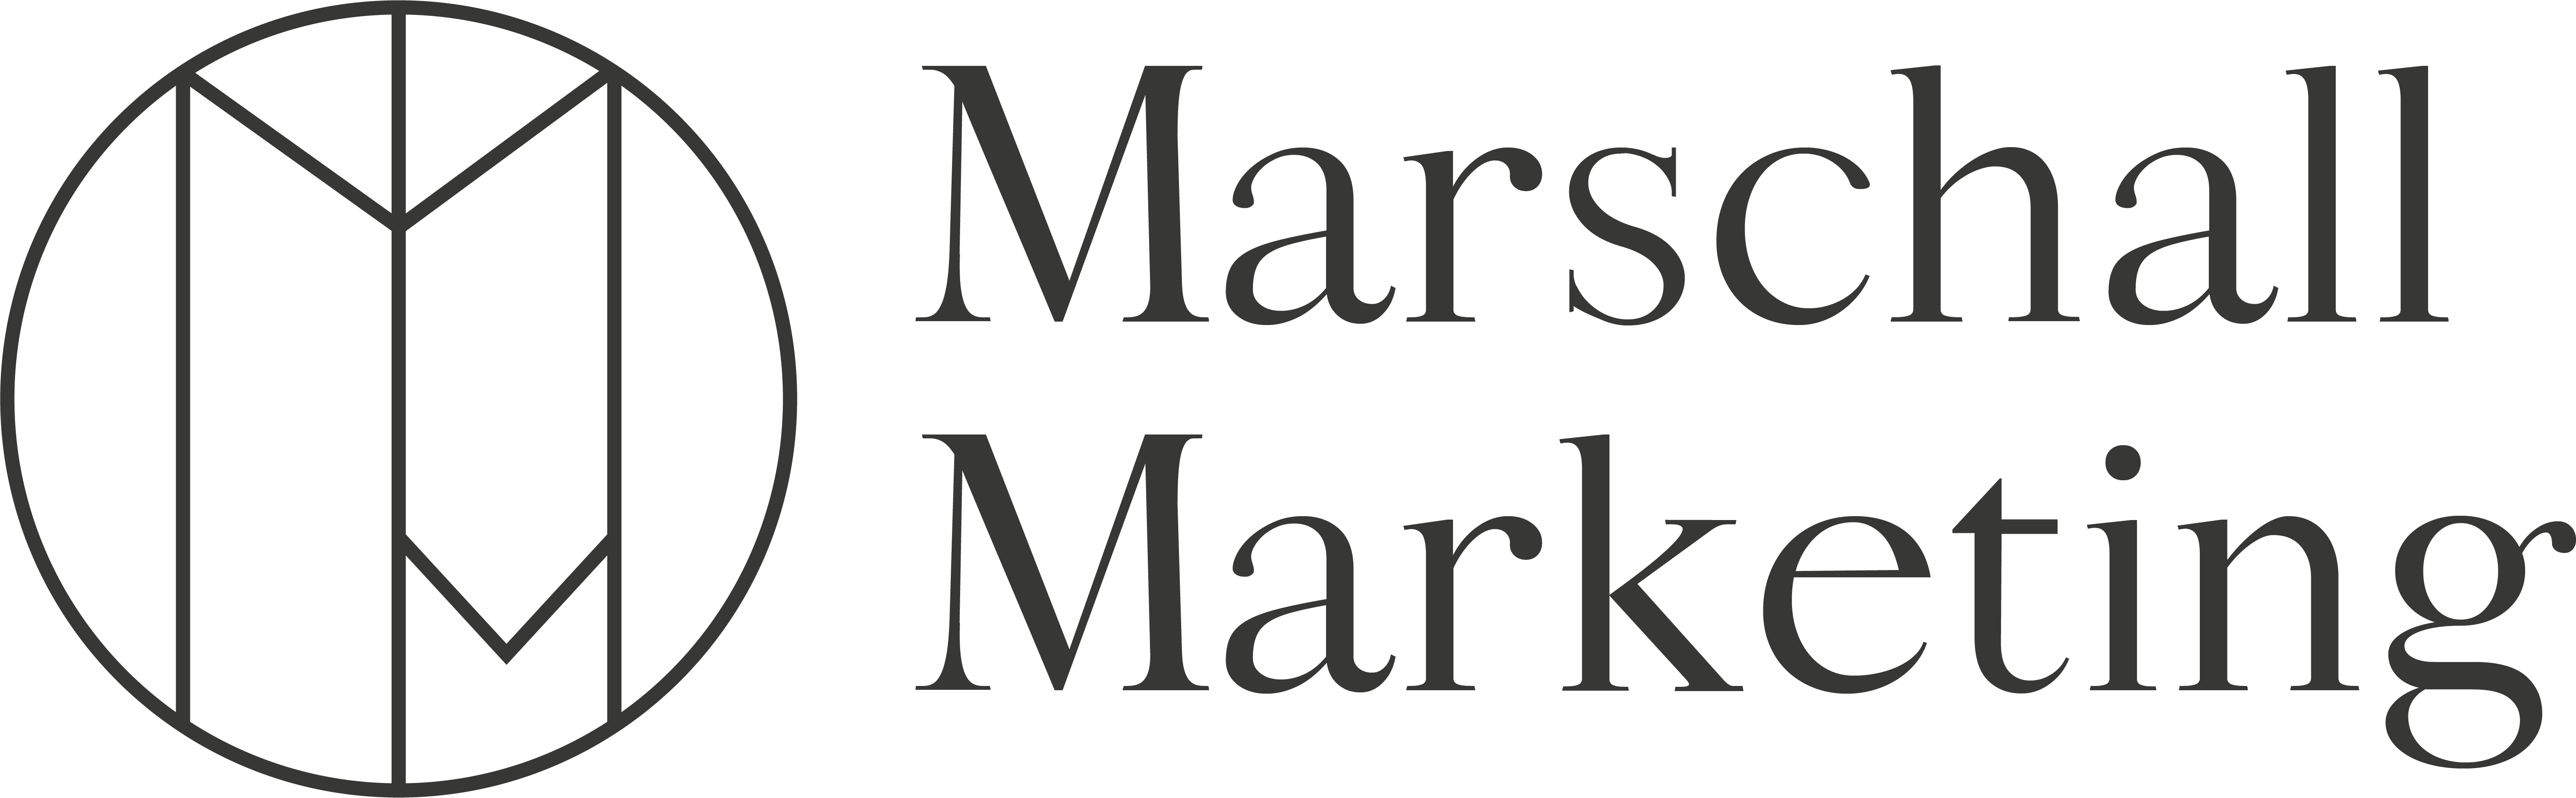 Marschall Marketing, Werbeagentur, Grafikdesign, Webdesign aus Zella-Mehlis